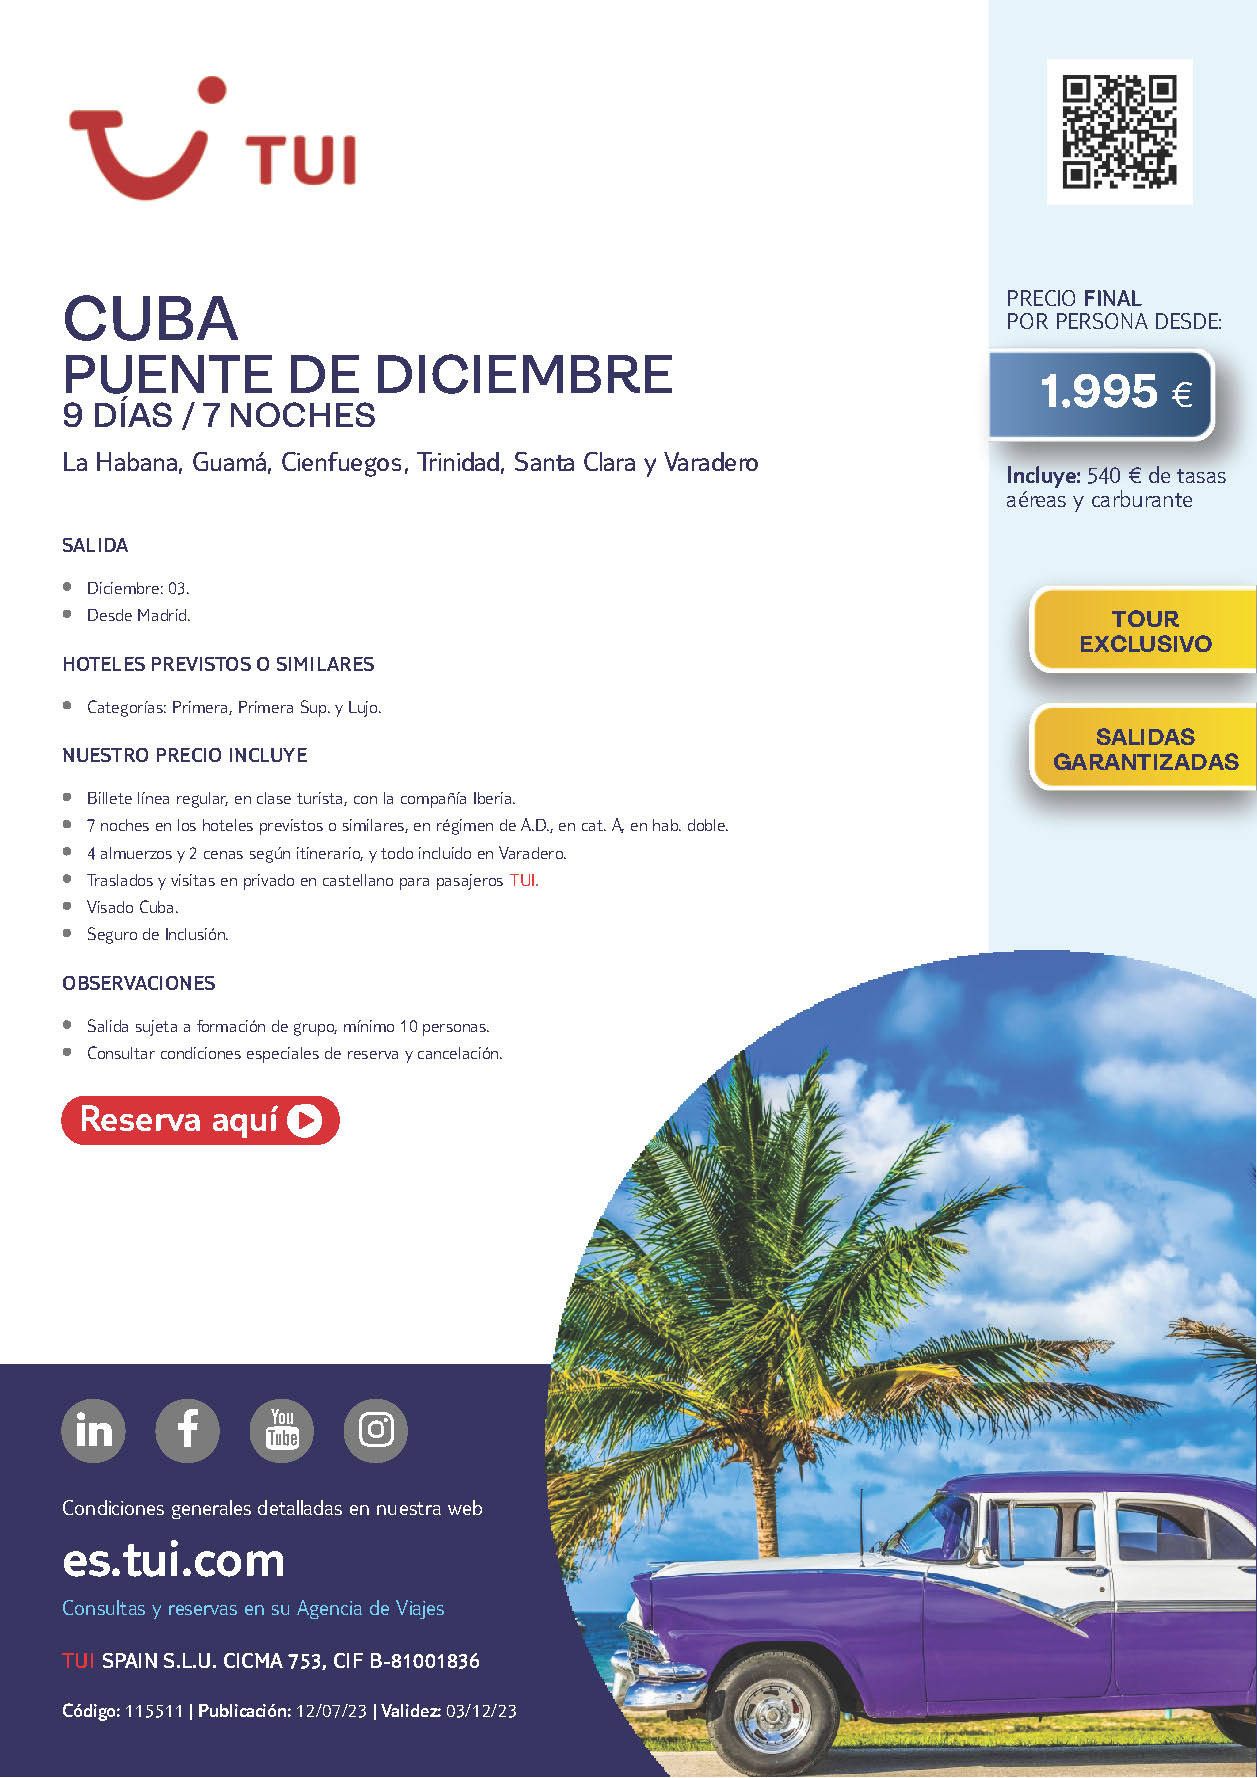 Oferta TUI Puente de Diciembre 2023 circuito Cuba 9 dias salida 3 de diciembre desde Madrid vuelos Iberia